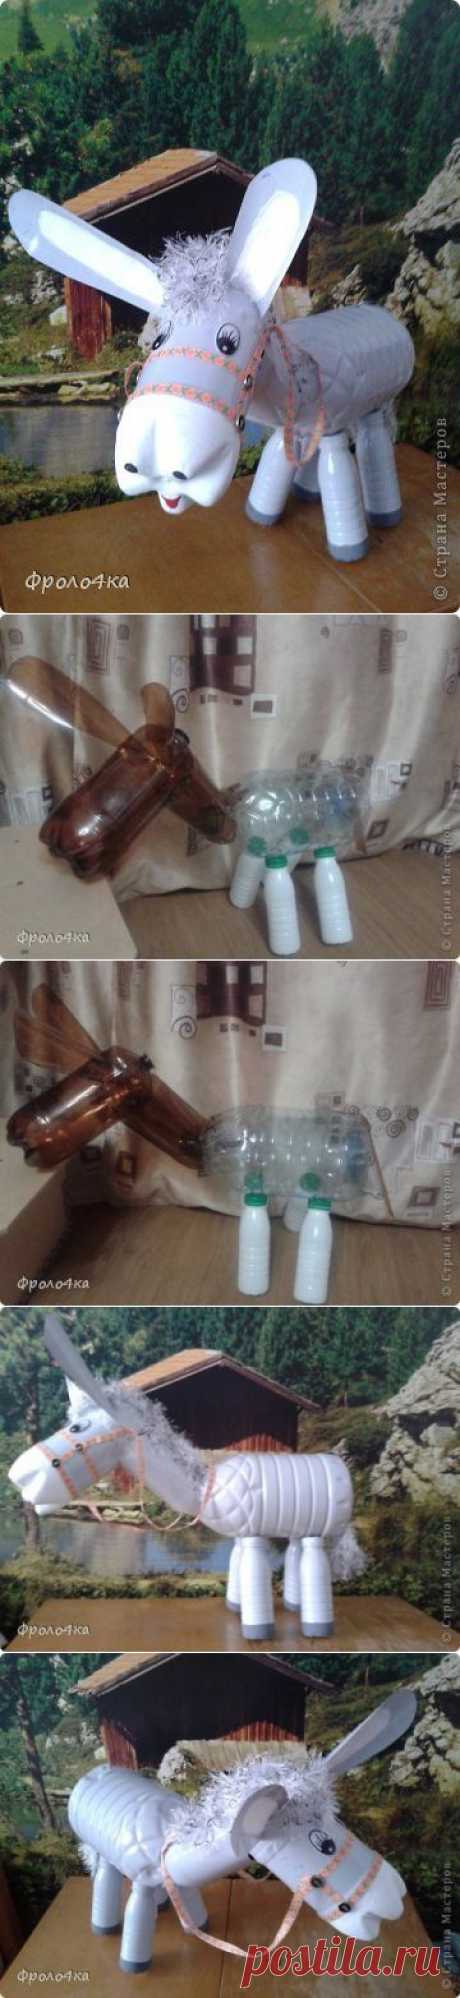 Ослик из пластиковых бутылок.